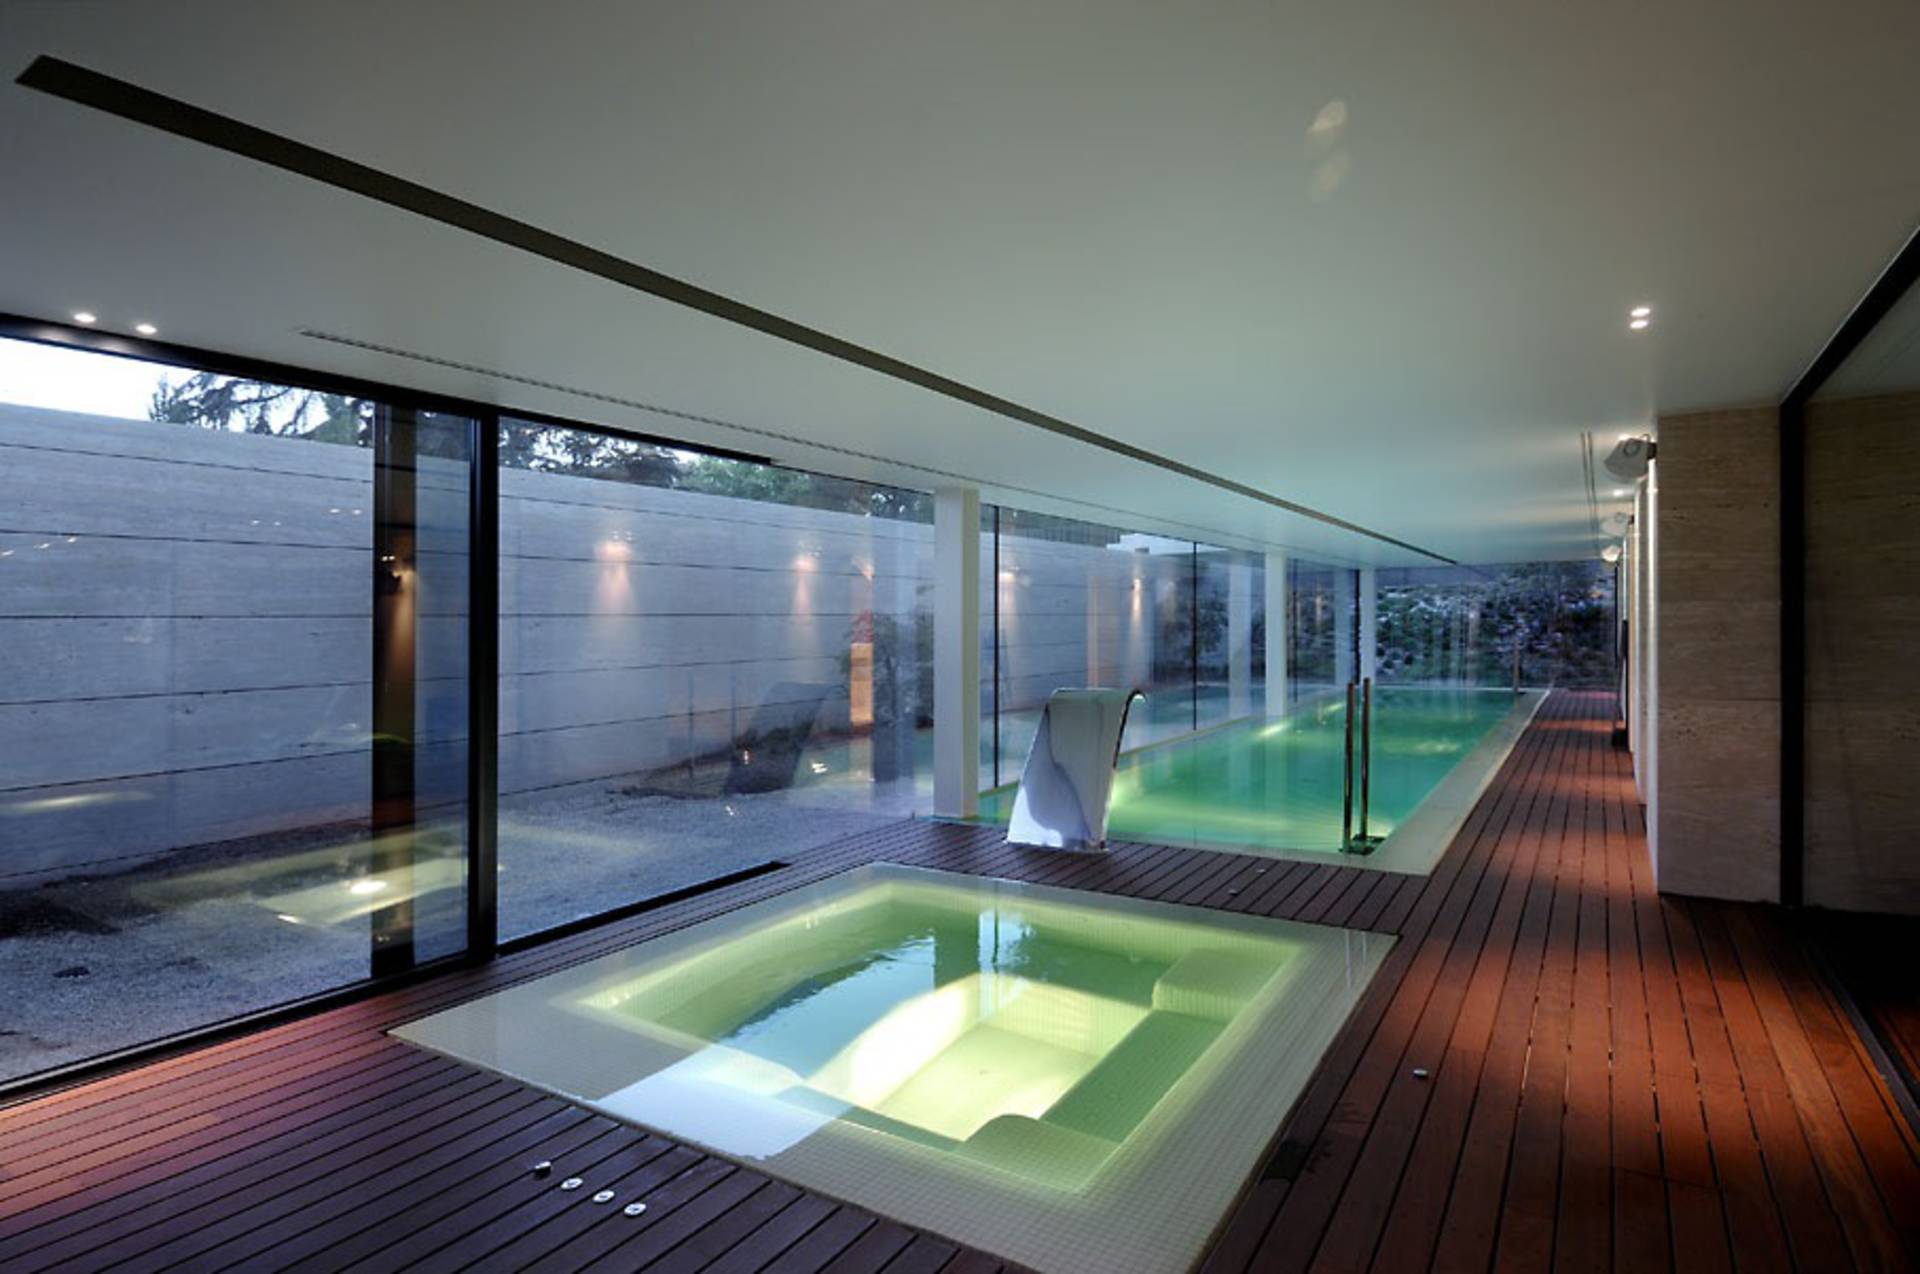 Бассейн хаи. Бассейн в доме. Бассейн с панорамными окнами. Двухэтажный дом с бассейном внутри. Интерьер бассейна в частном доме.